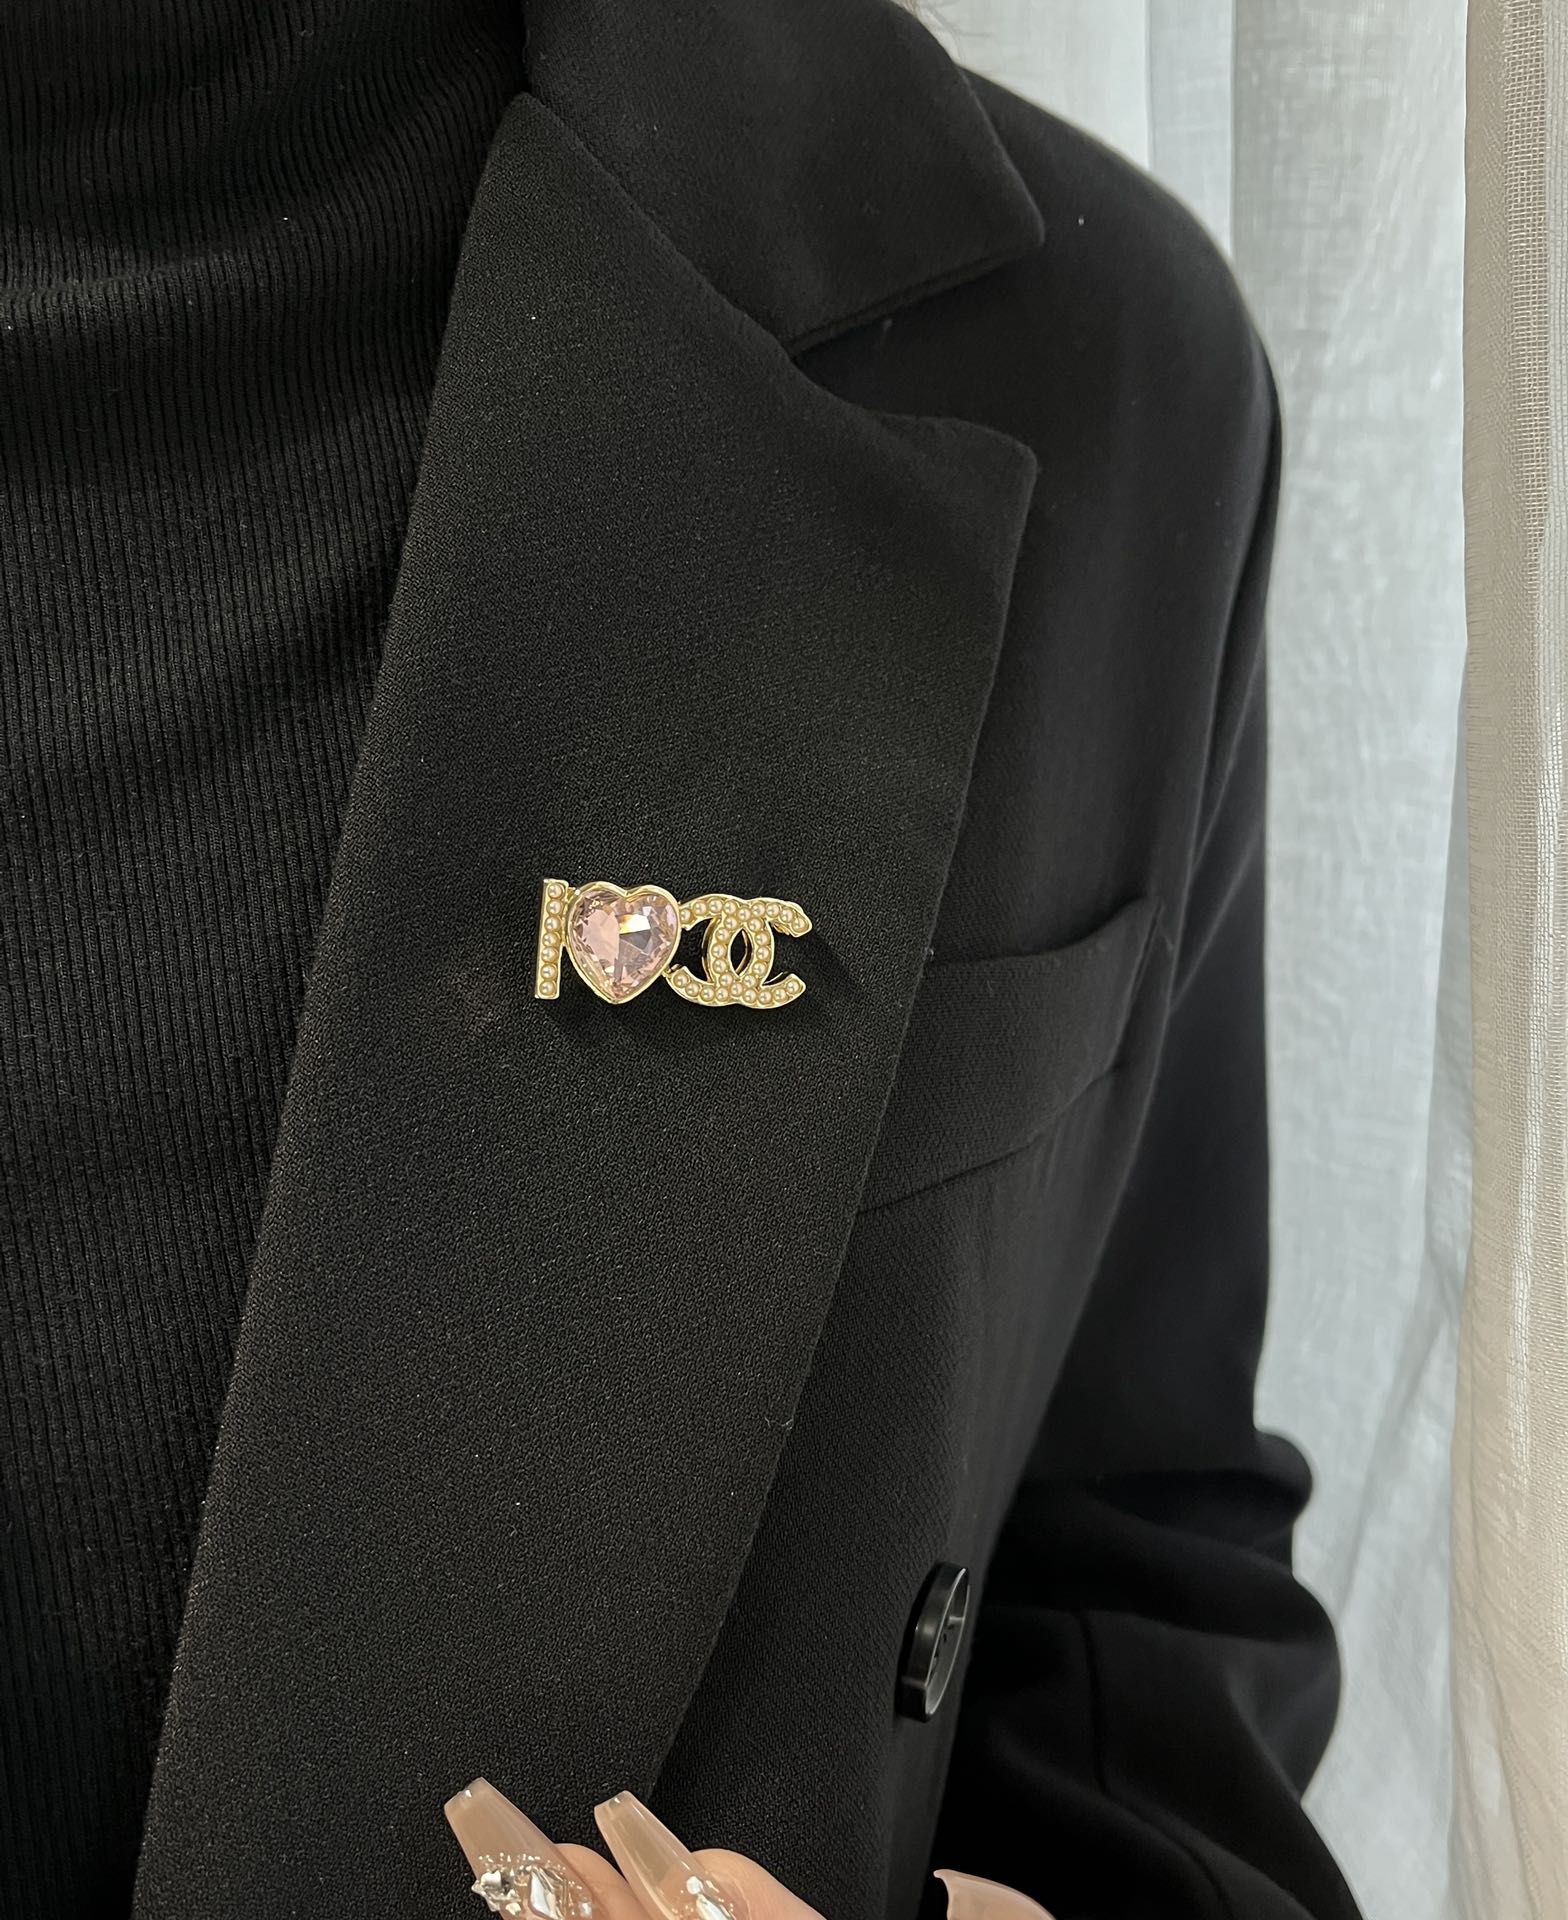 D133 Chanel brooch